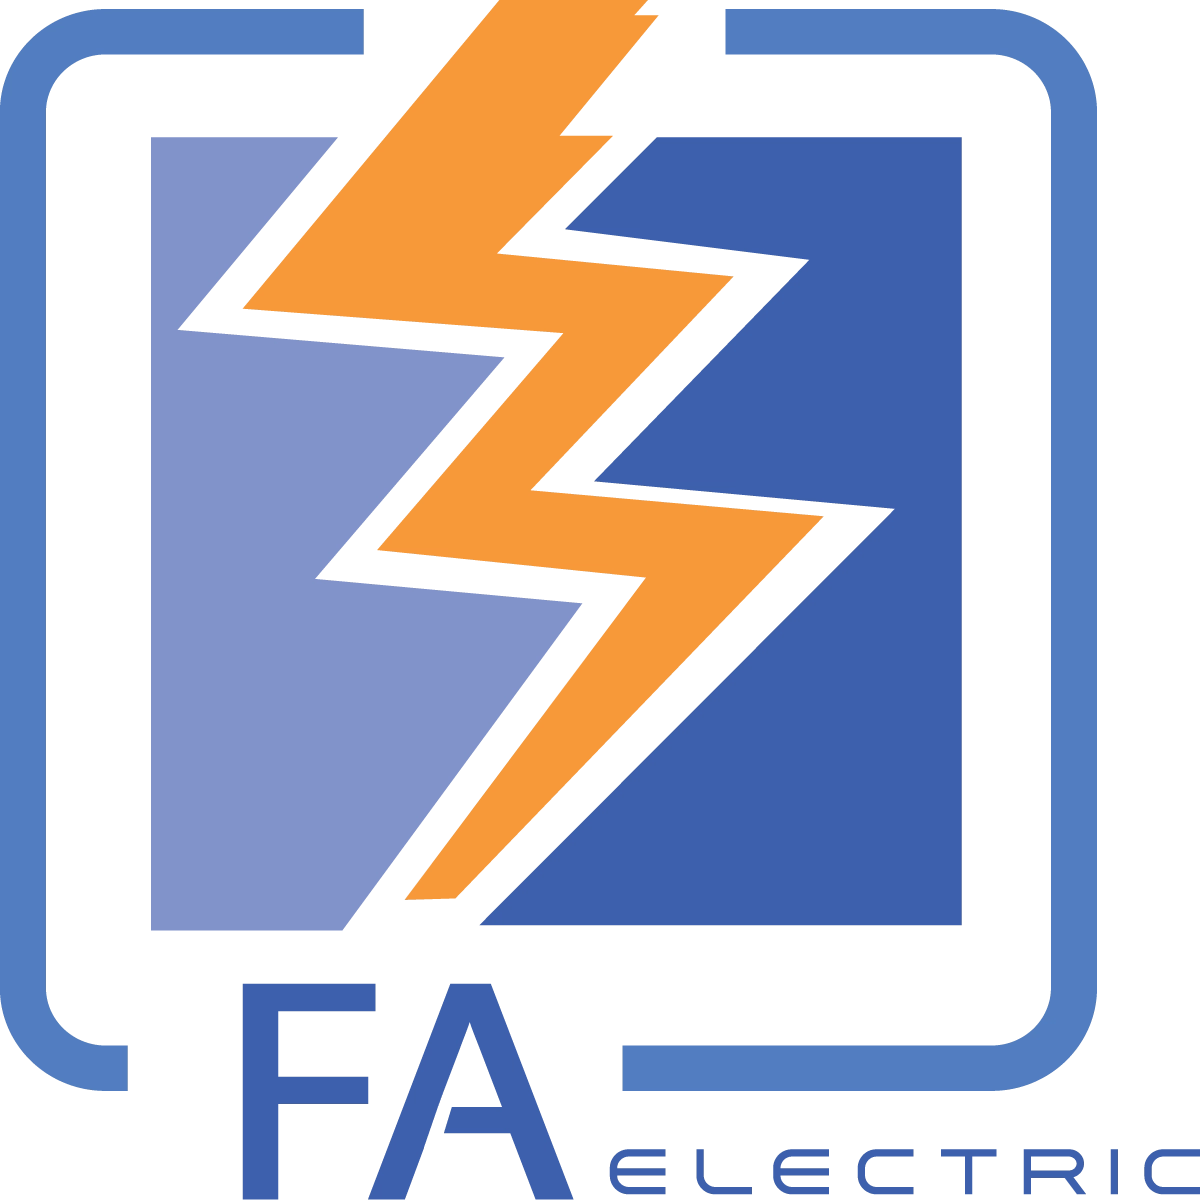 FA Electric Logo